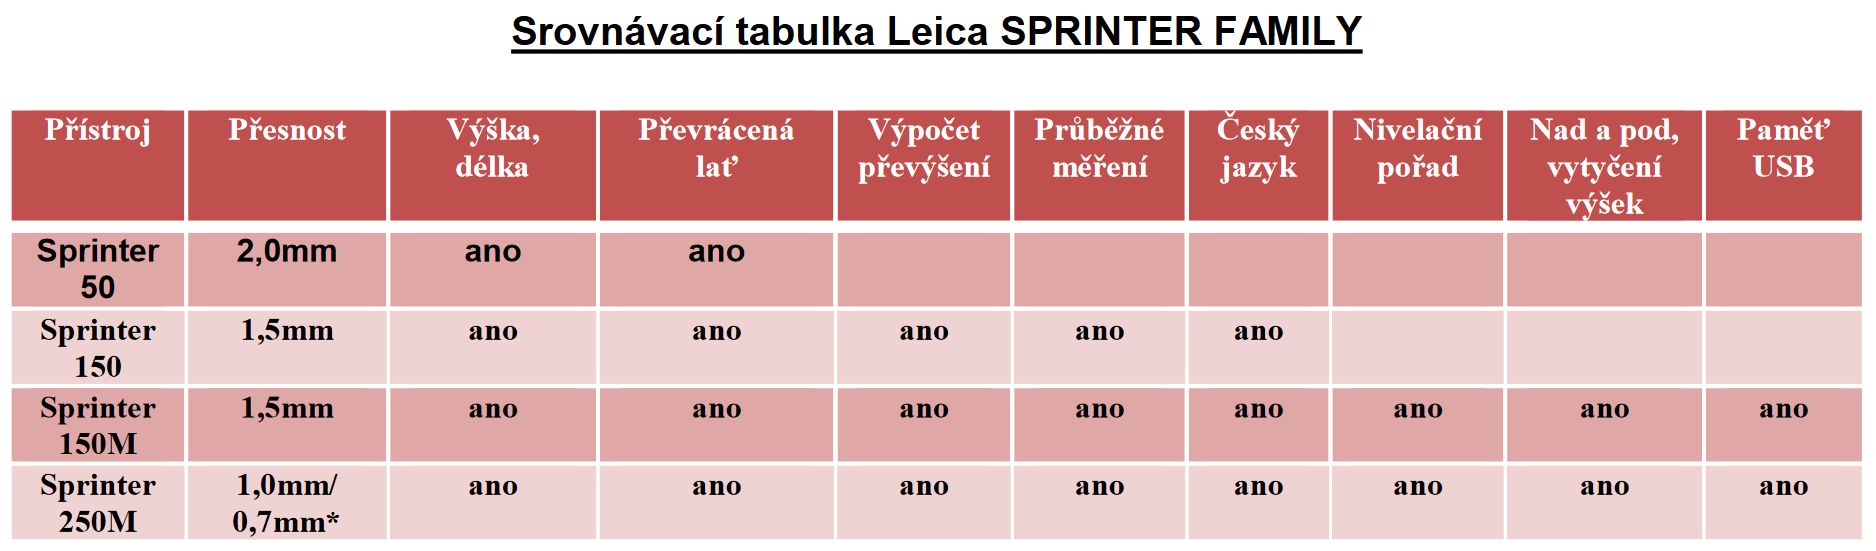 Leica Sprinter srovnávací tabulka